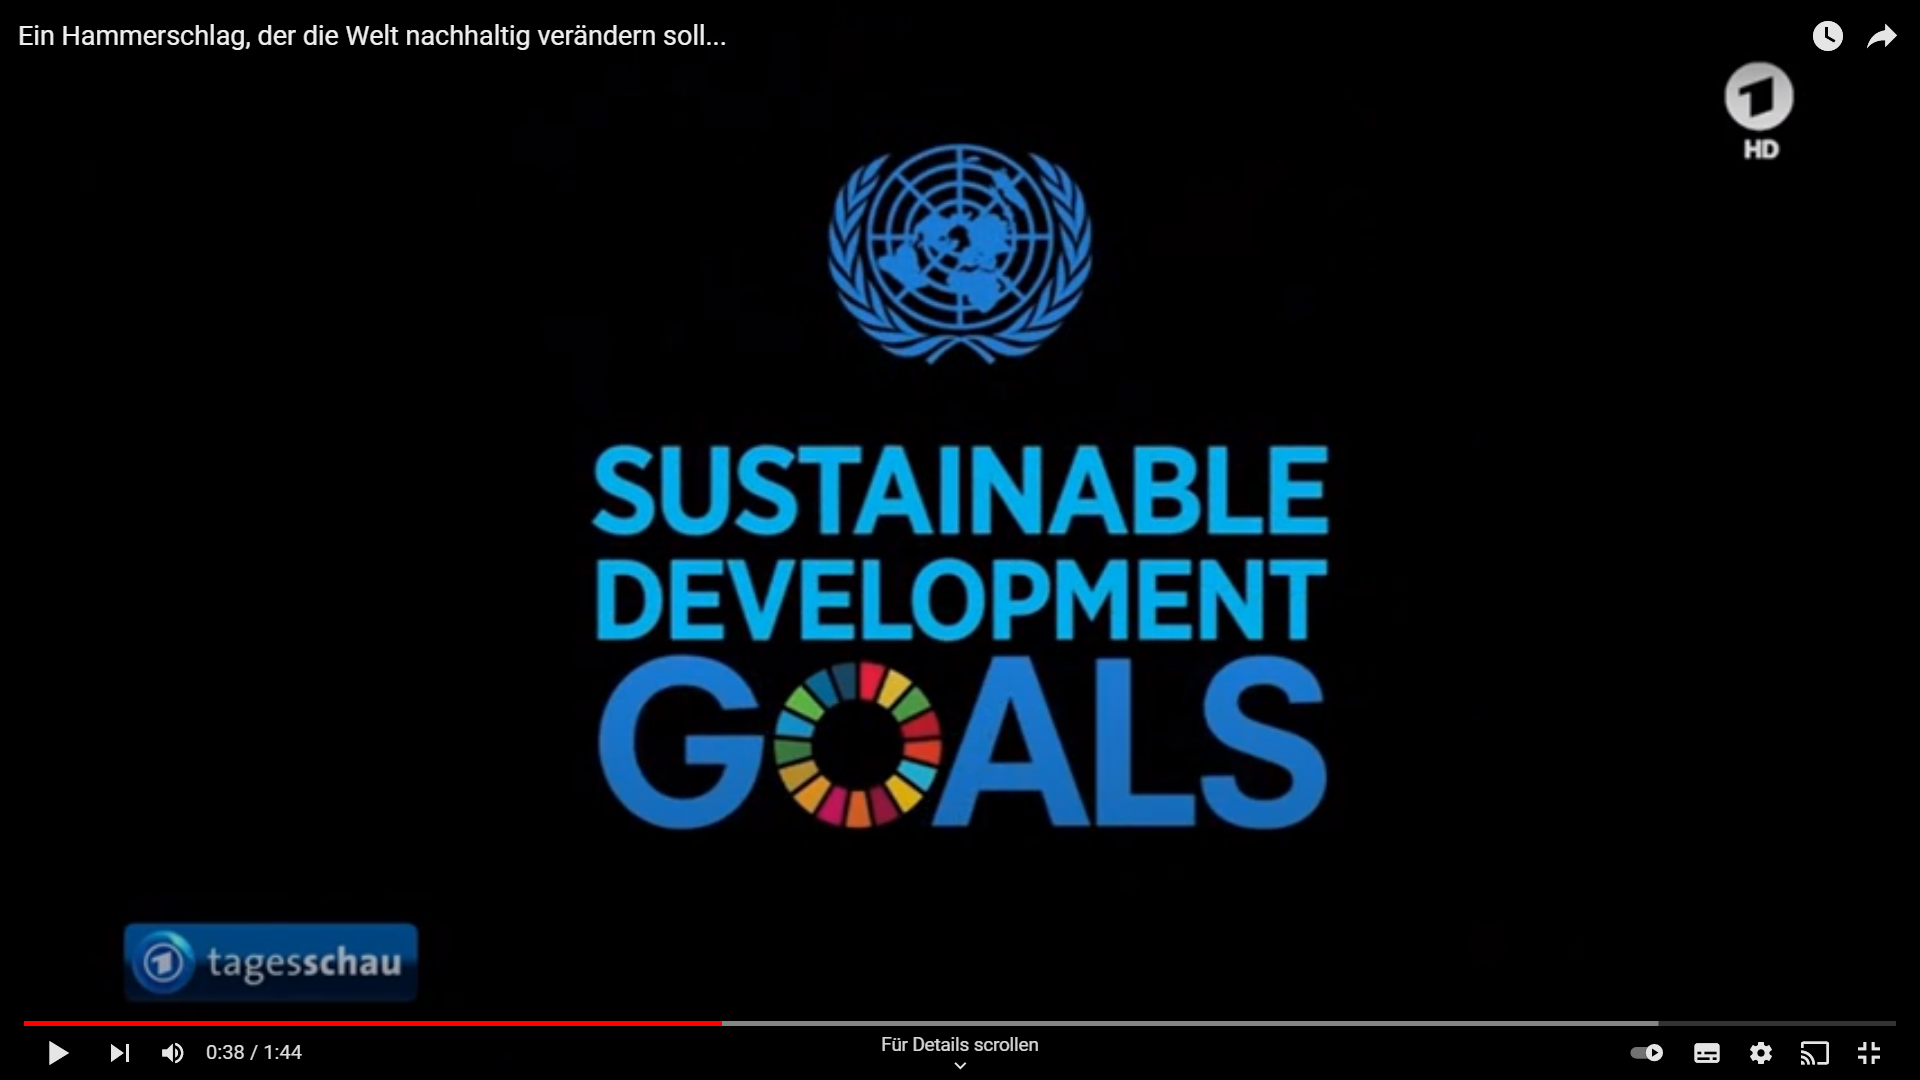 SDGs - Ein Hammerschlag der die Welt nachhaltig verändern soll